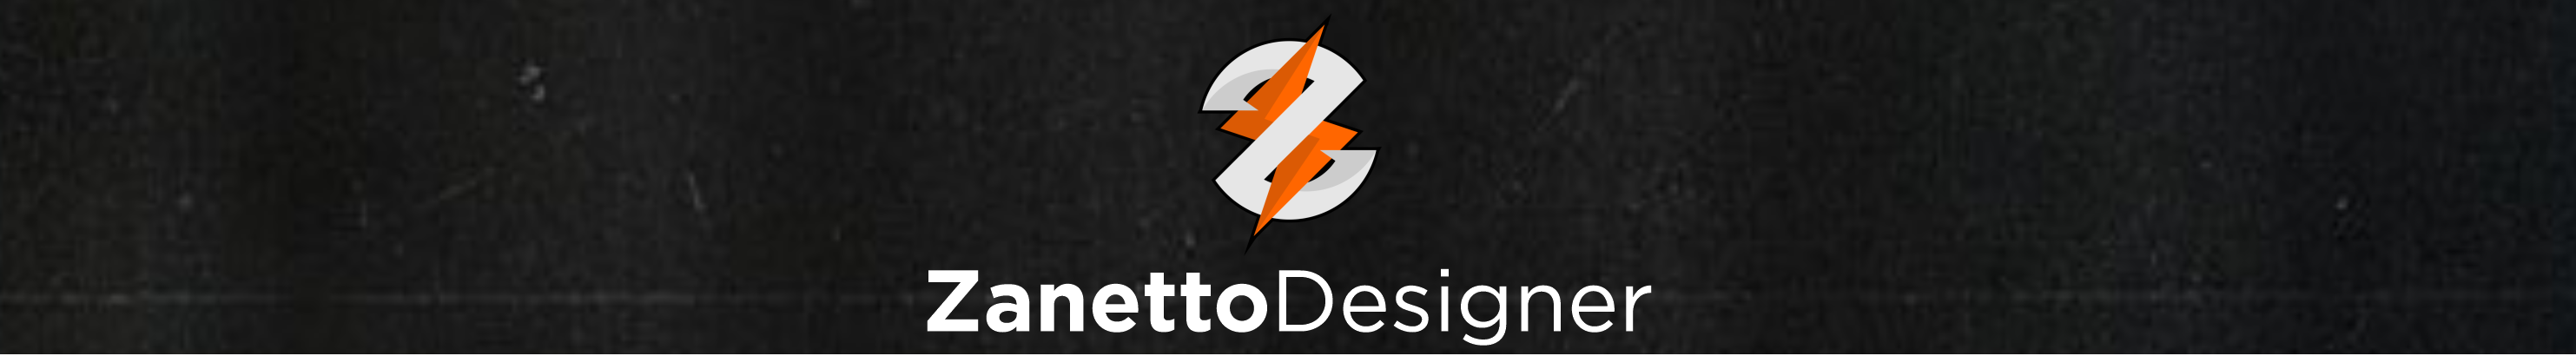 Zanetto Designer's profile banner